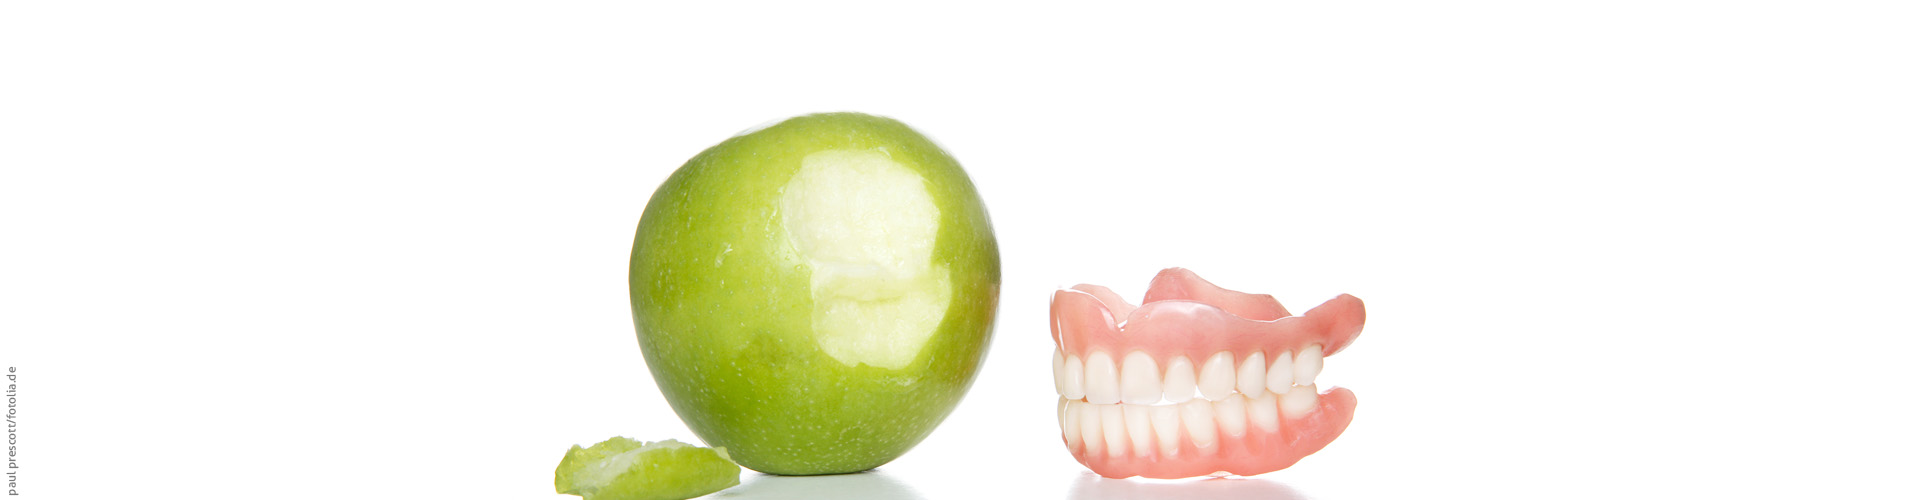 Zahnfehlstellungen - eine Übersicht